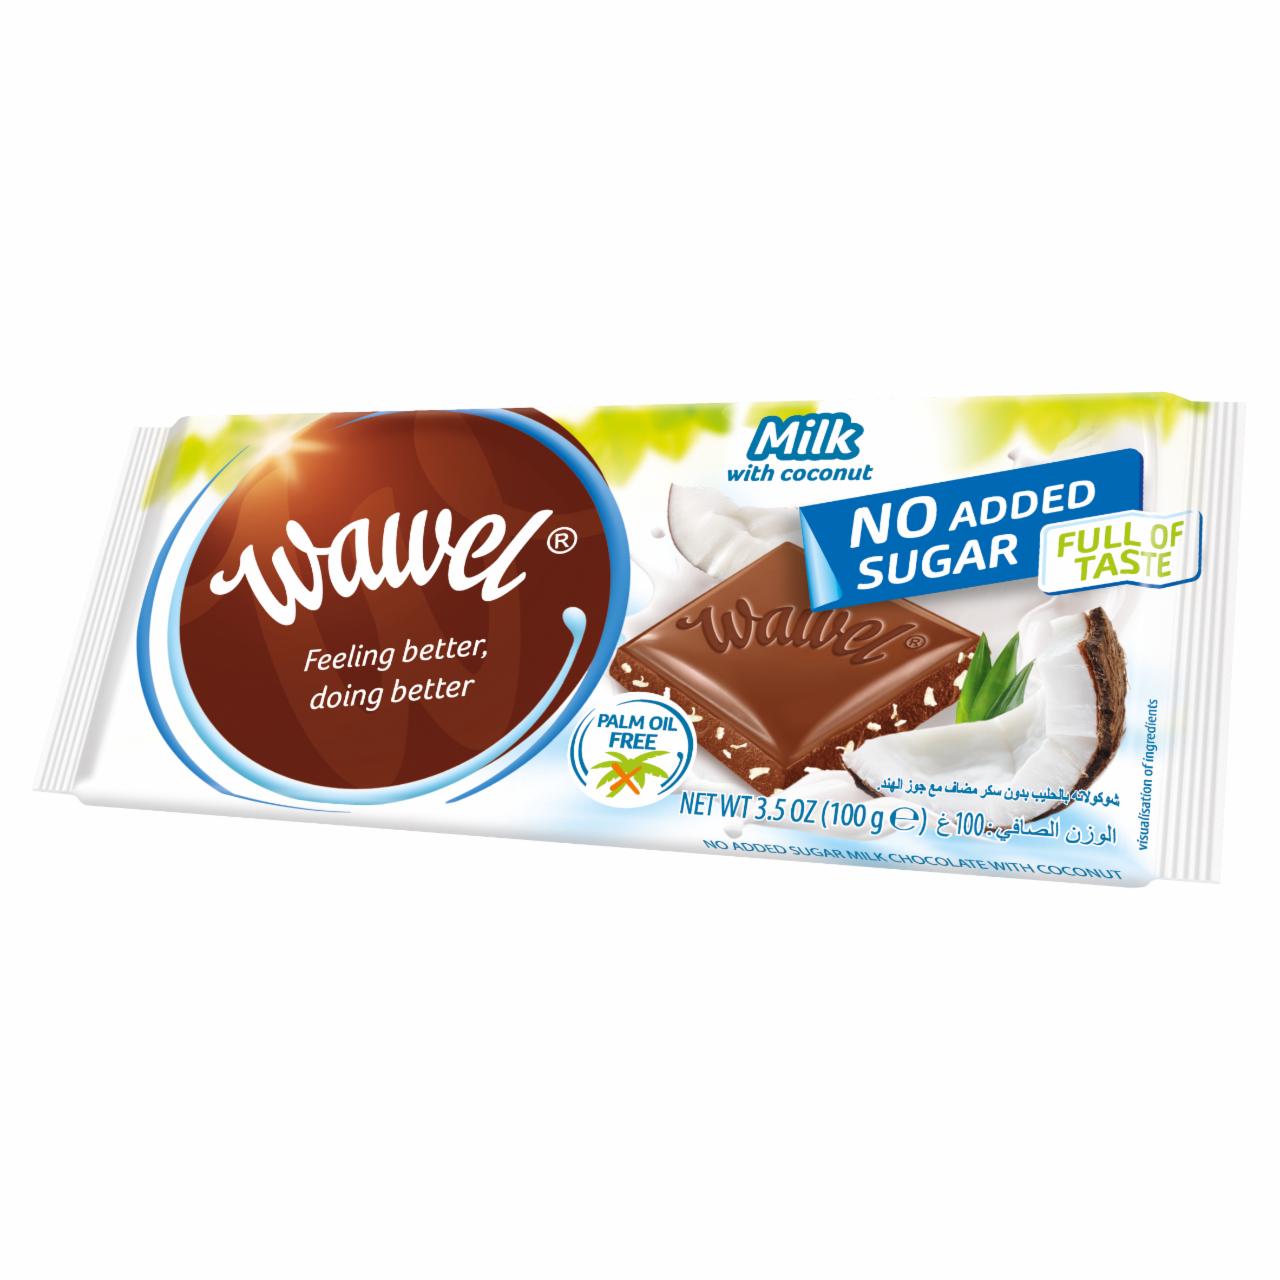 Képek - Wawel kókuszos tejcsokoládé, hozzáadott cukor nélkül, édesítőszerrel 100 g 